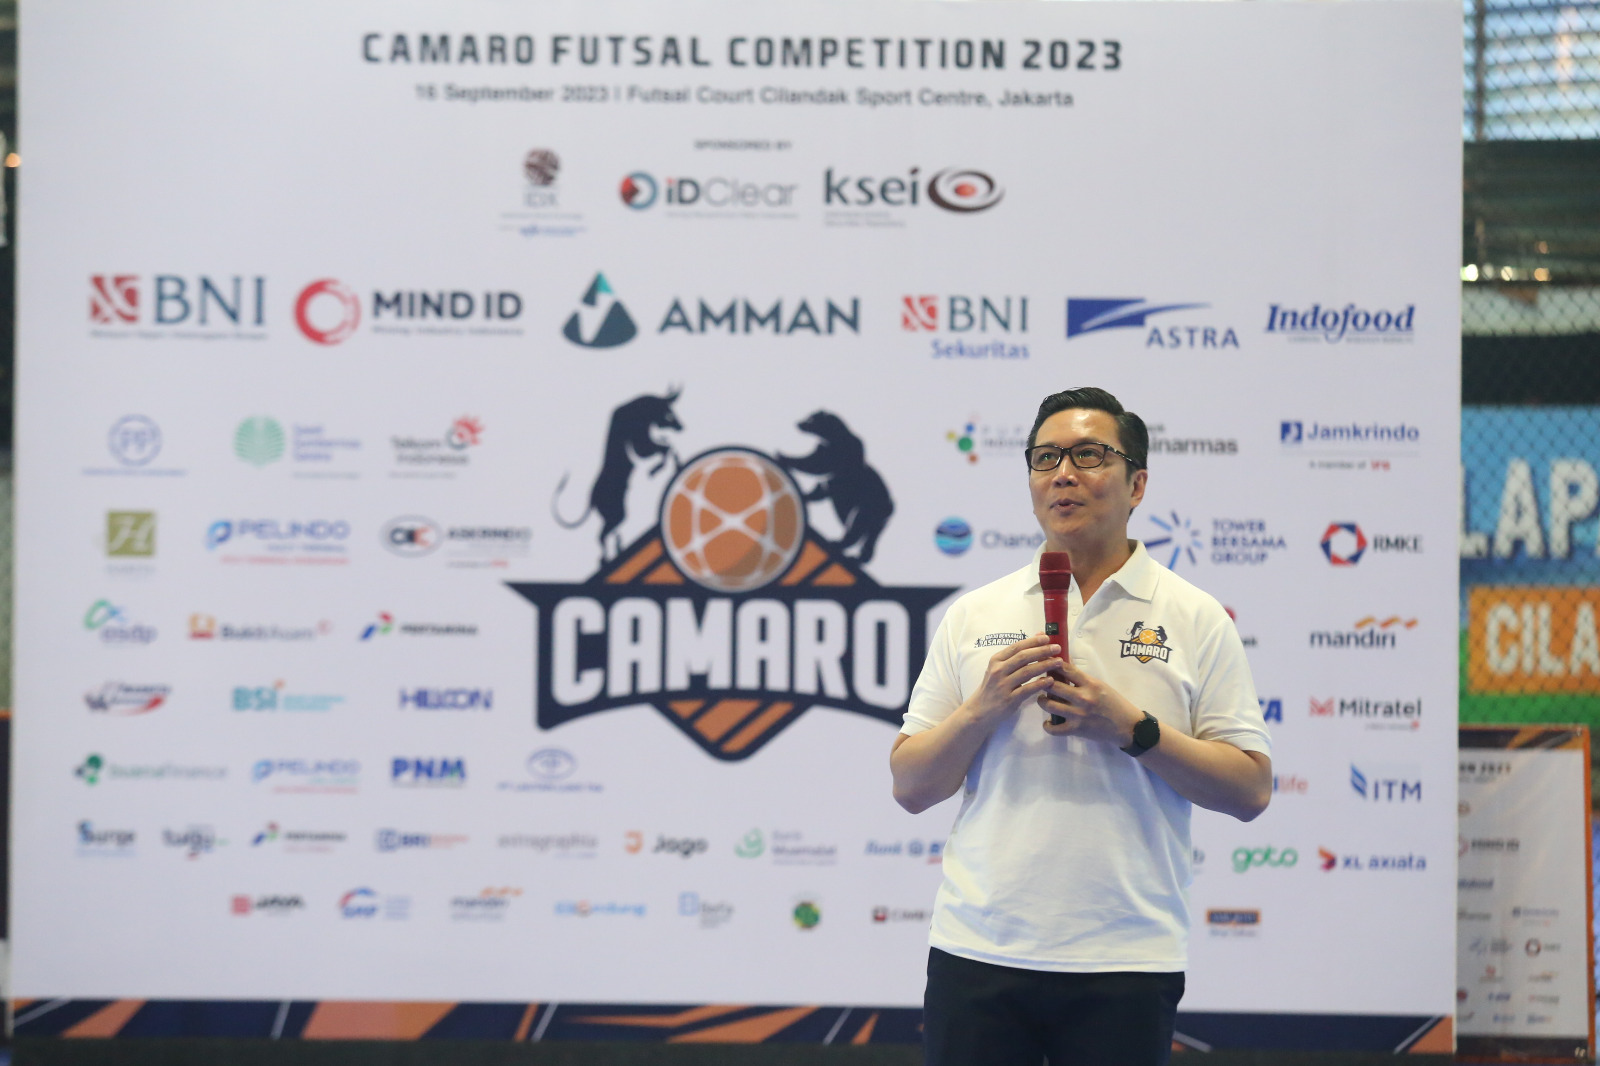 Camaro Futsal Competition 2023, Jadi Ajang Perkuat Ekosistem Pasar Modal Dari Segala Lini